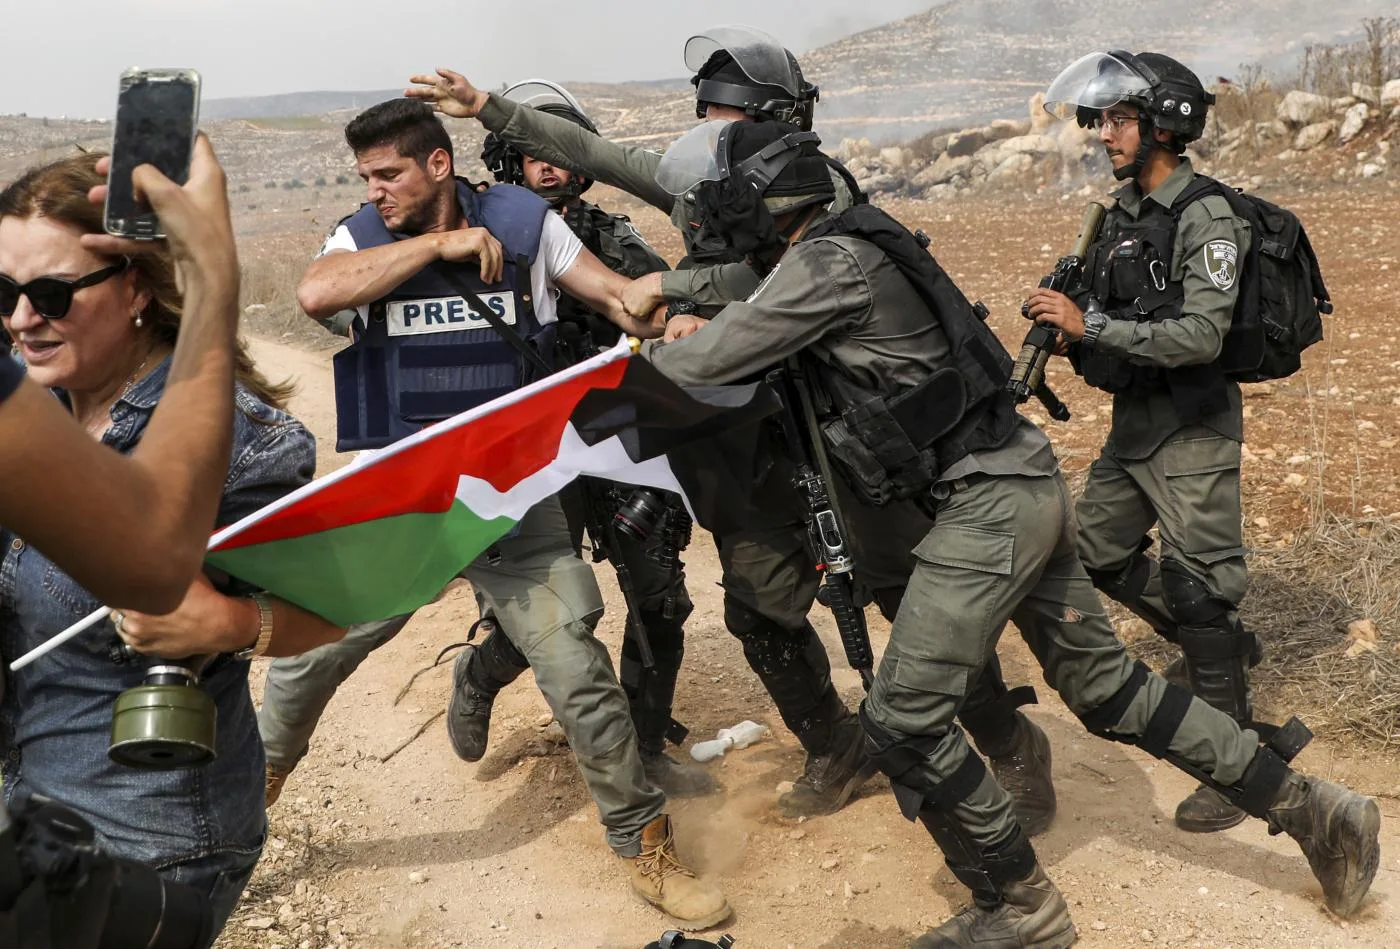 حرس الحدود الإسرائيلي يتشاجر مع مصور صحفي في أثناء تغطيته لاشتباكات بين القوات الإسرائيلية والمتظاهرين الفلسطينيين